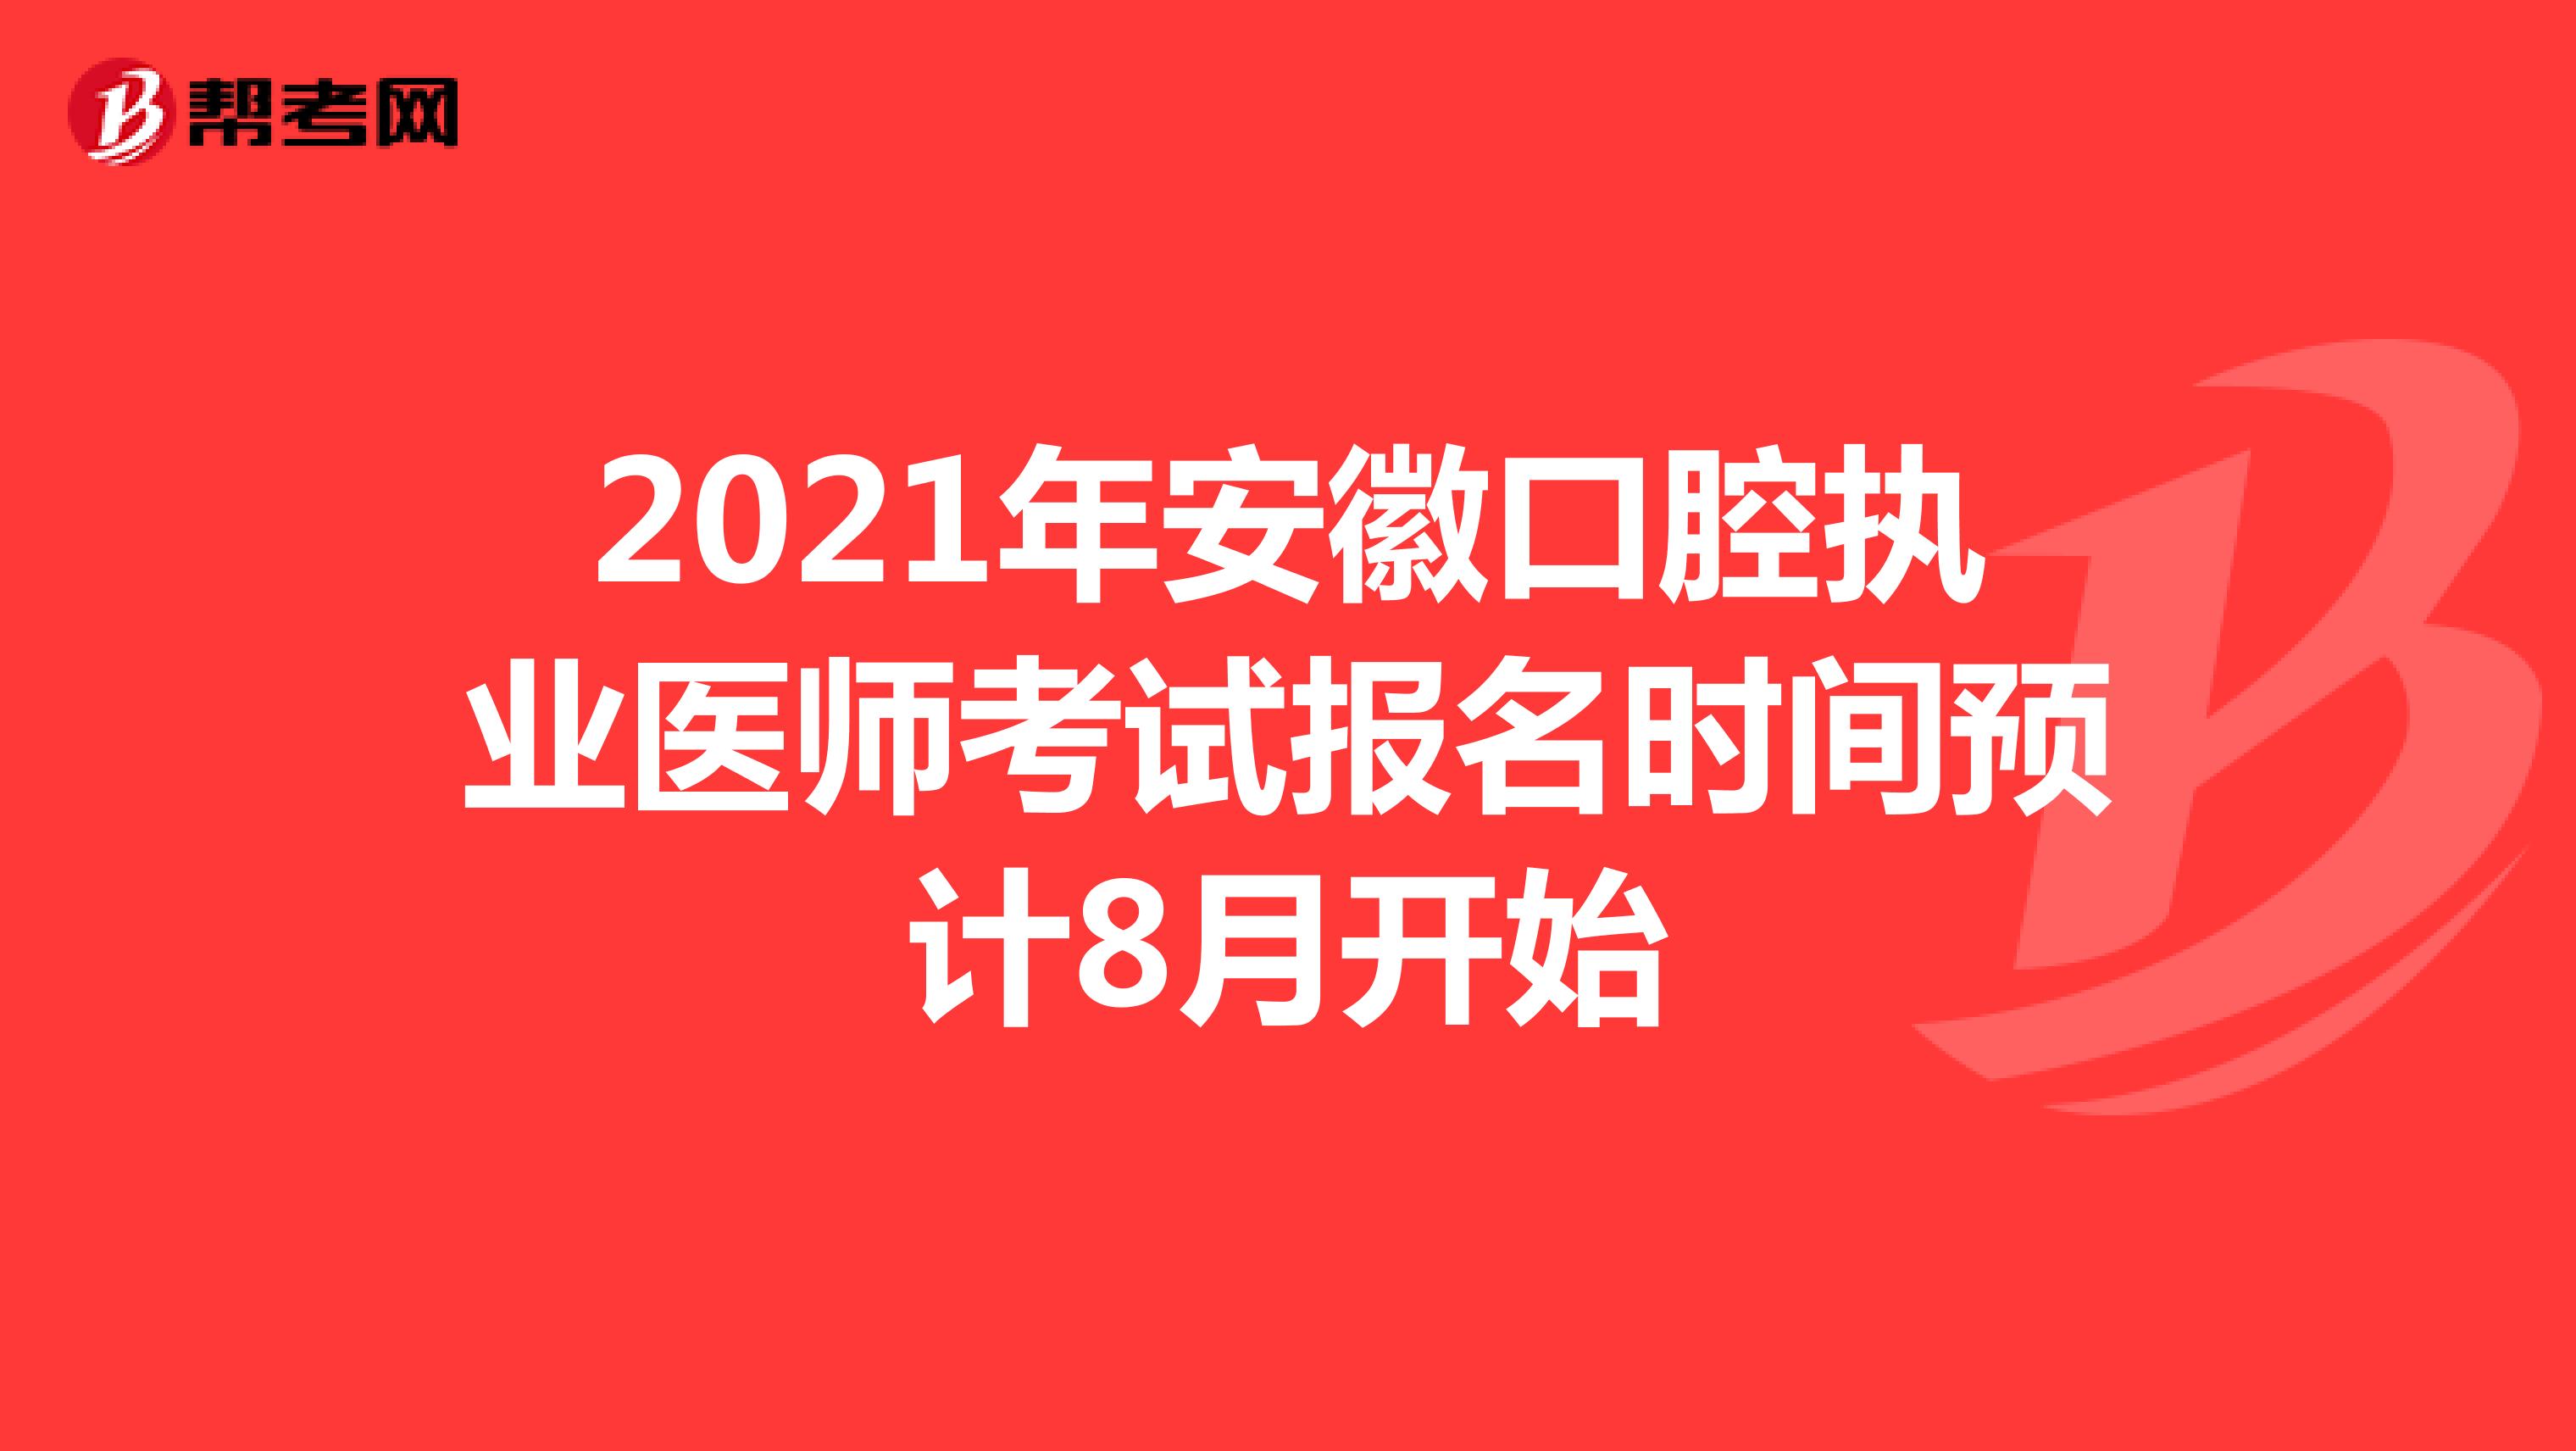 2021年安徽口腔执业医师考试报名时间预计8月开始